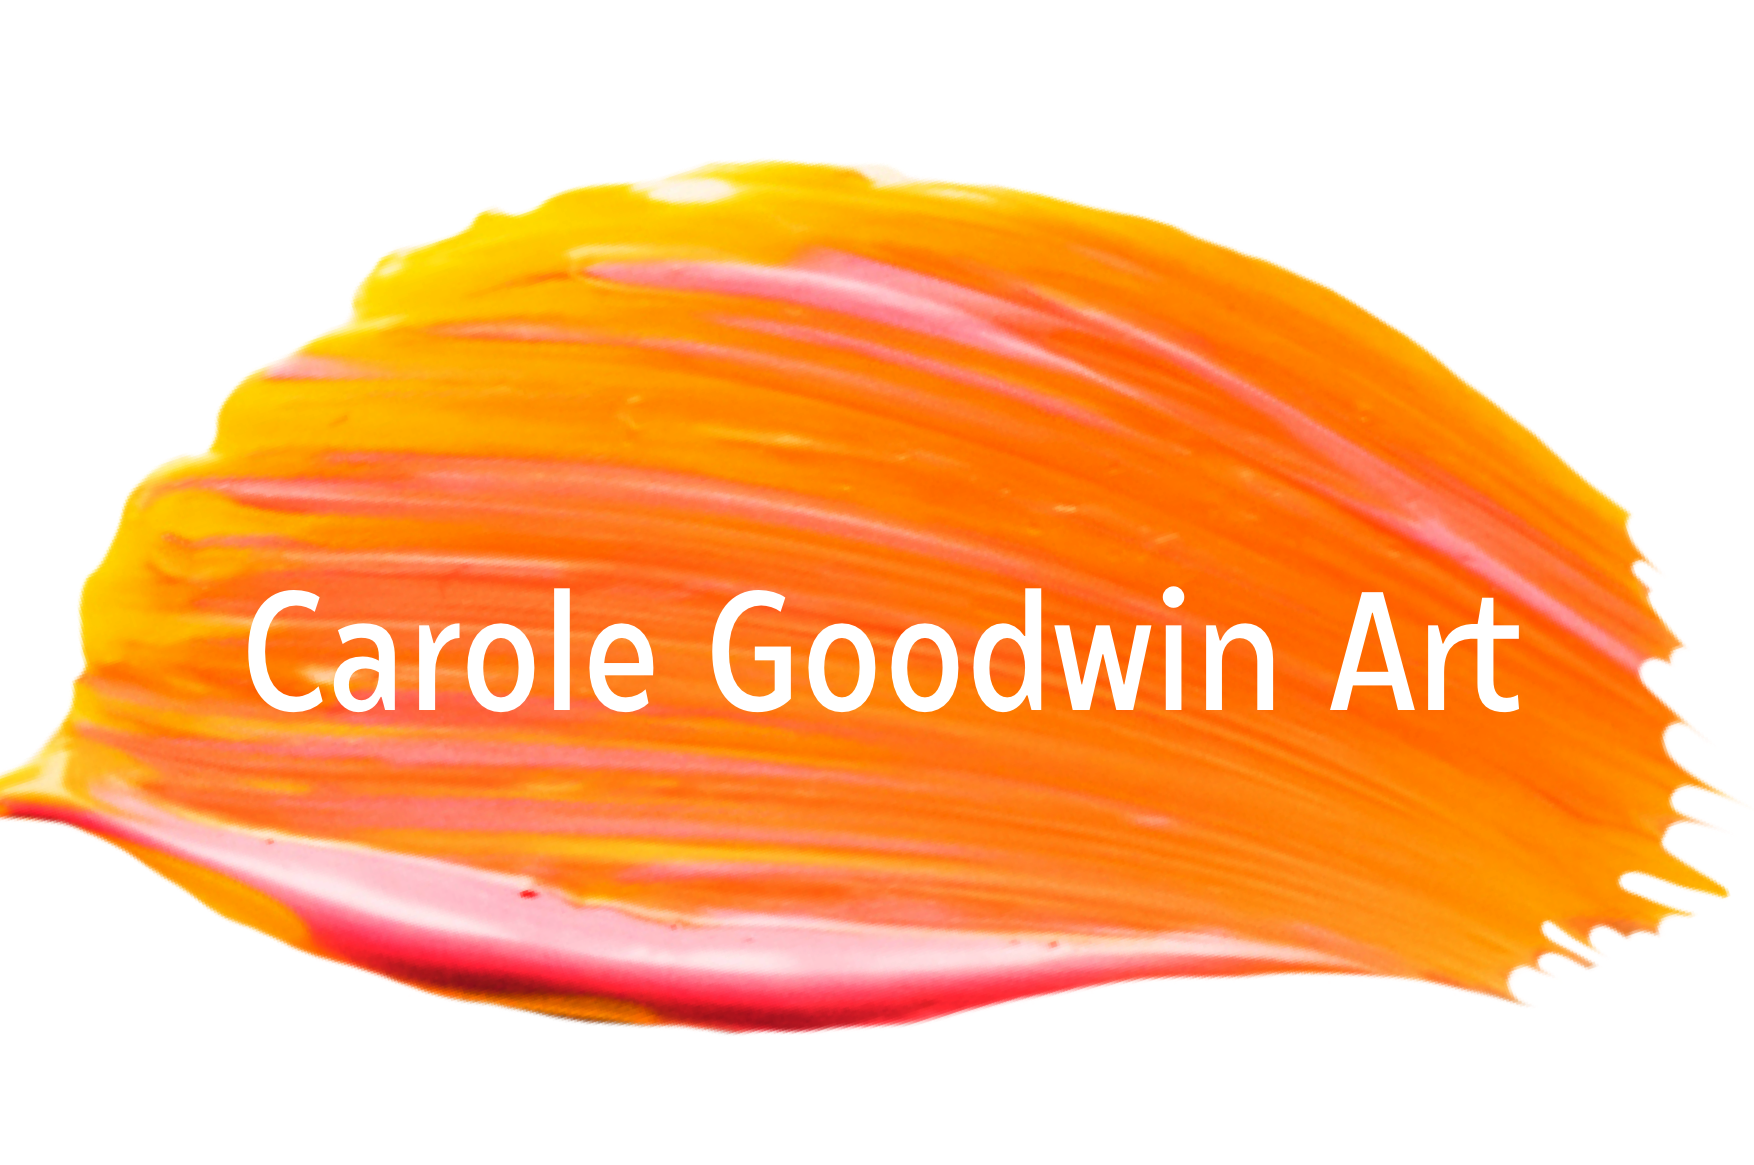 Carole Goodwin